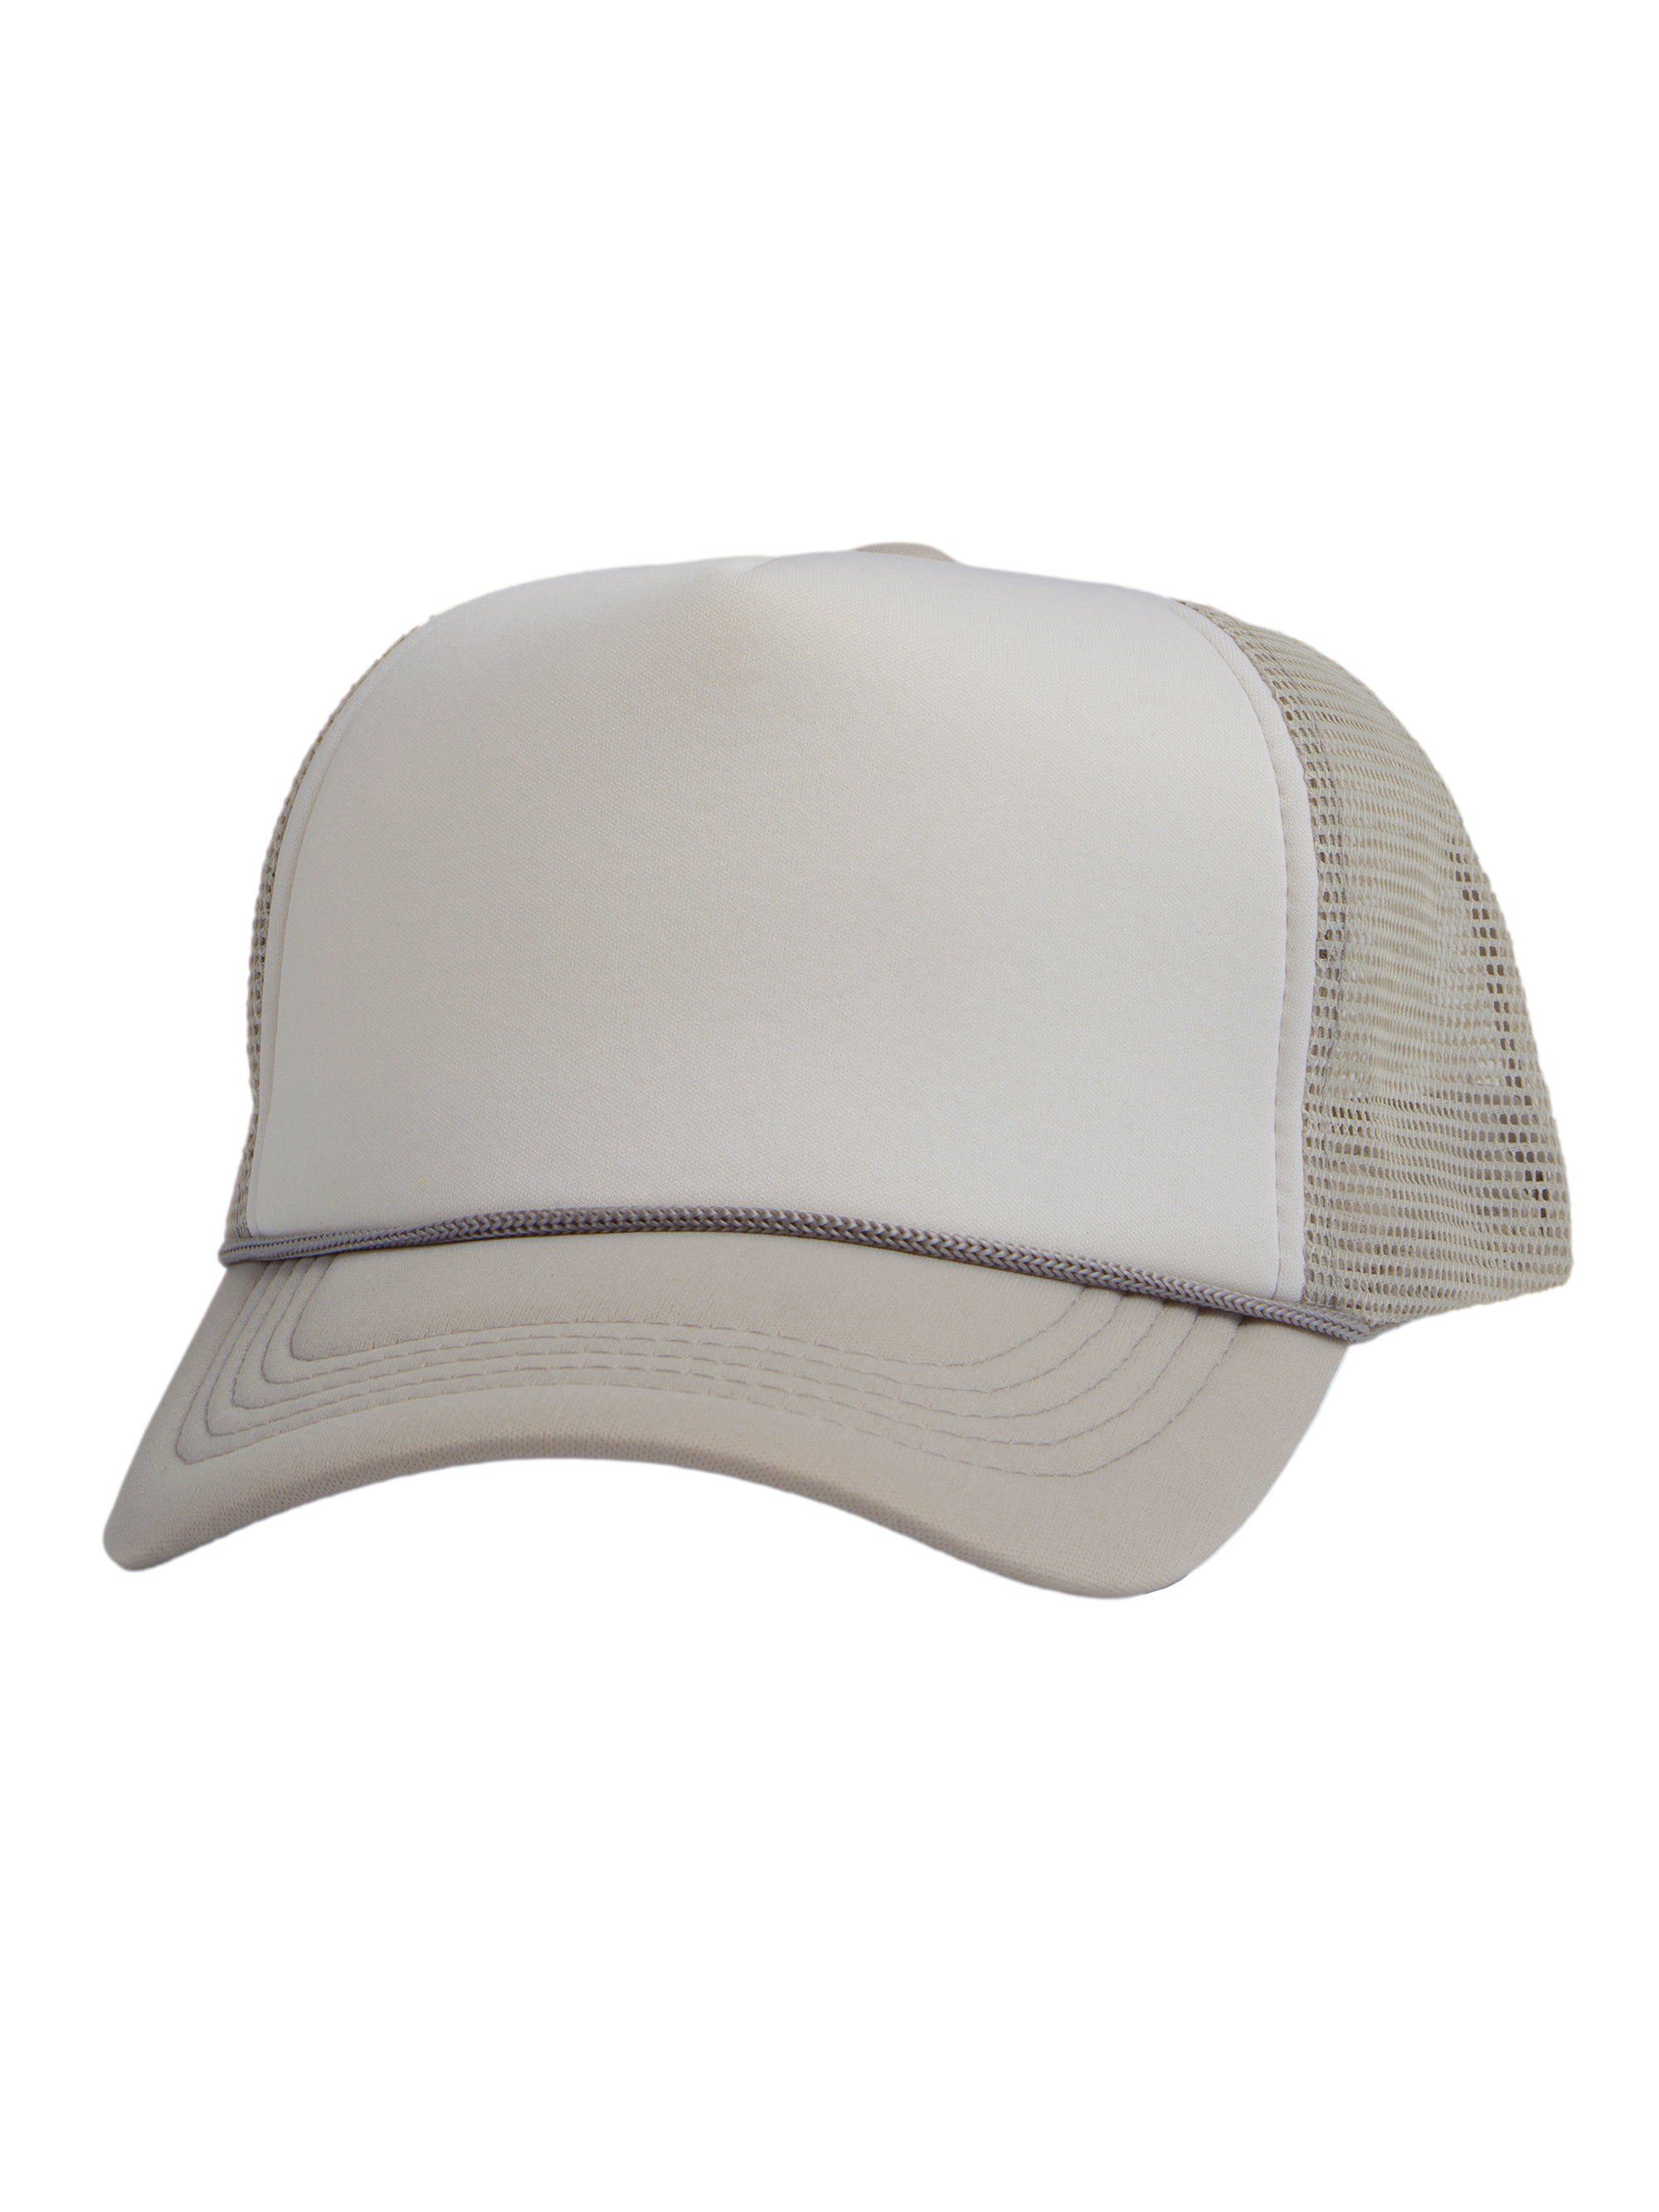 Top Headwear Blank Trucker Hat - Mens Trucker Hats Foam Mesh Snapback  White/Light Grey